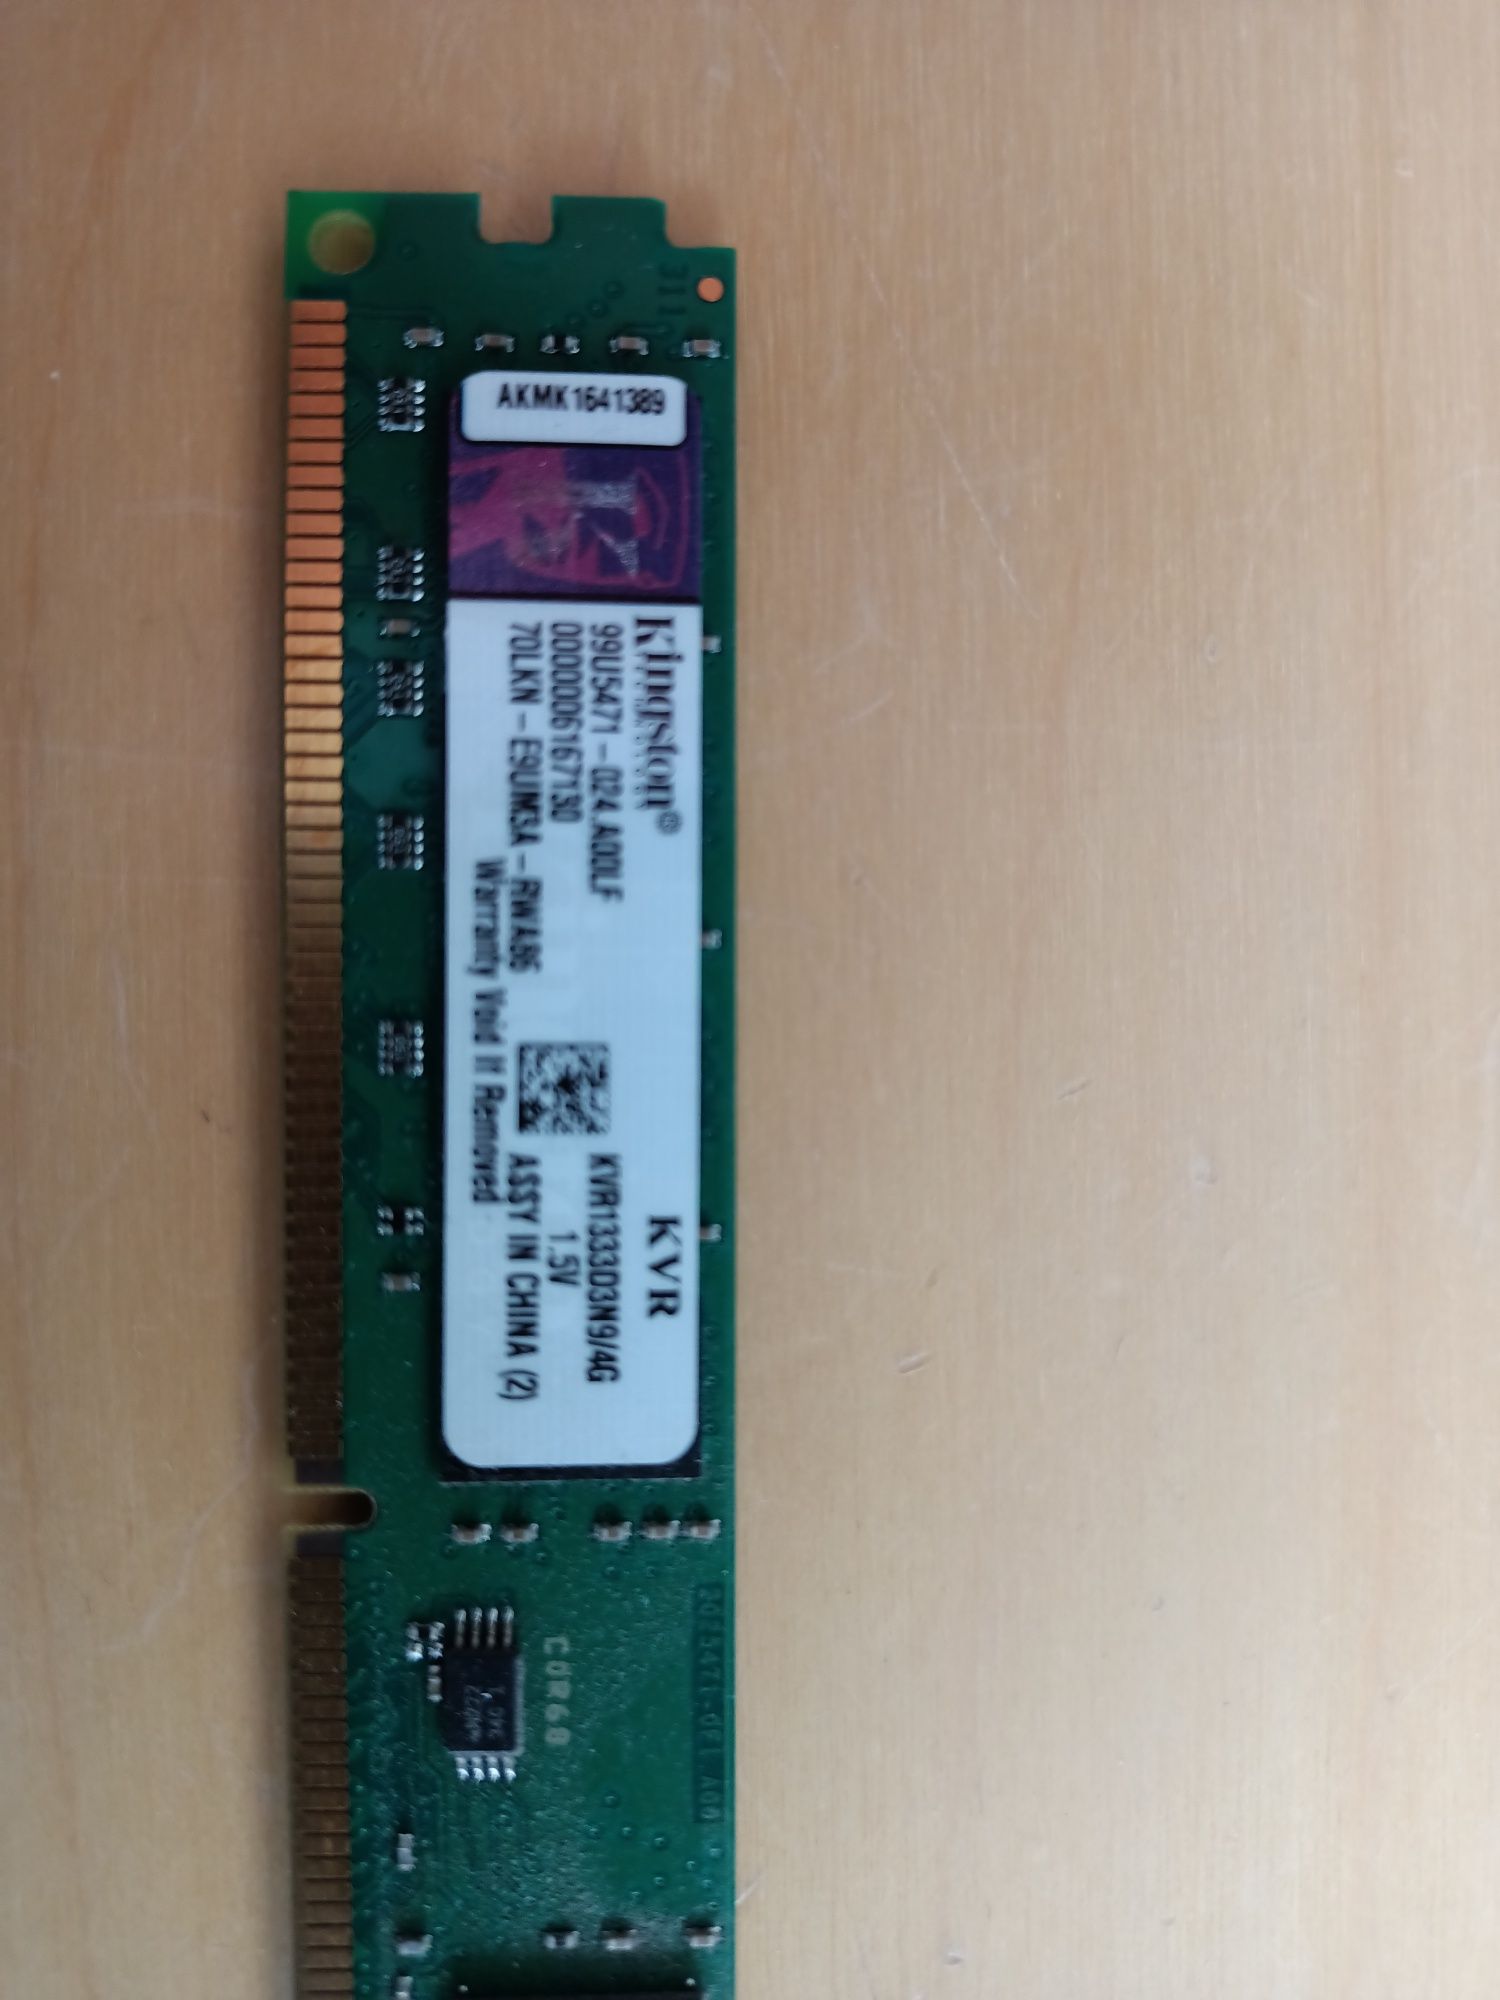 Ram DDR3 4GB Kingston, Crucial, Hynix